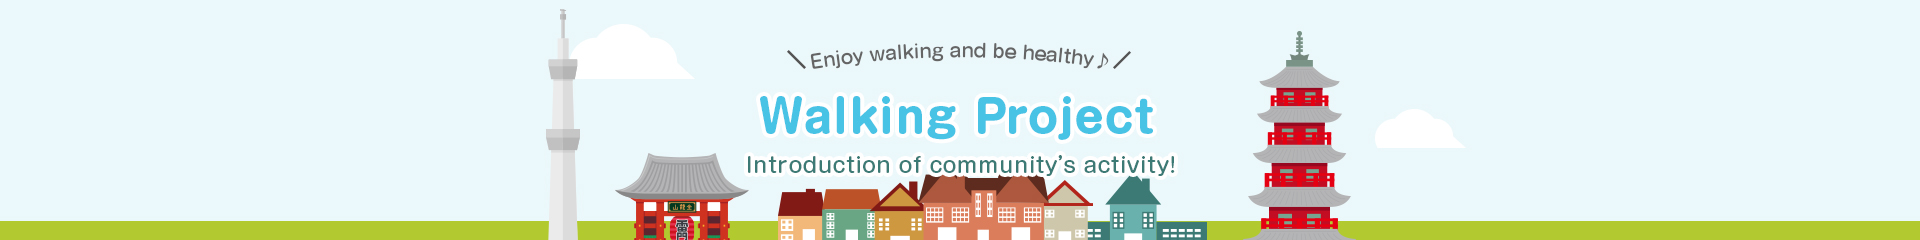 Walking Project List